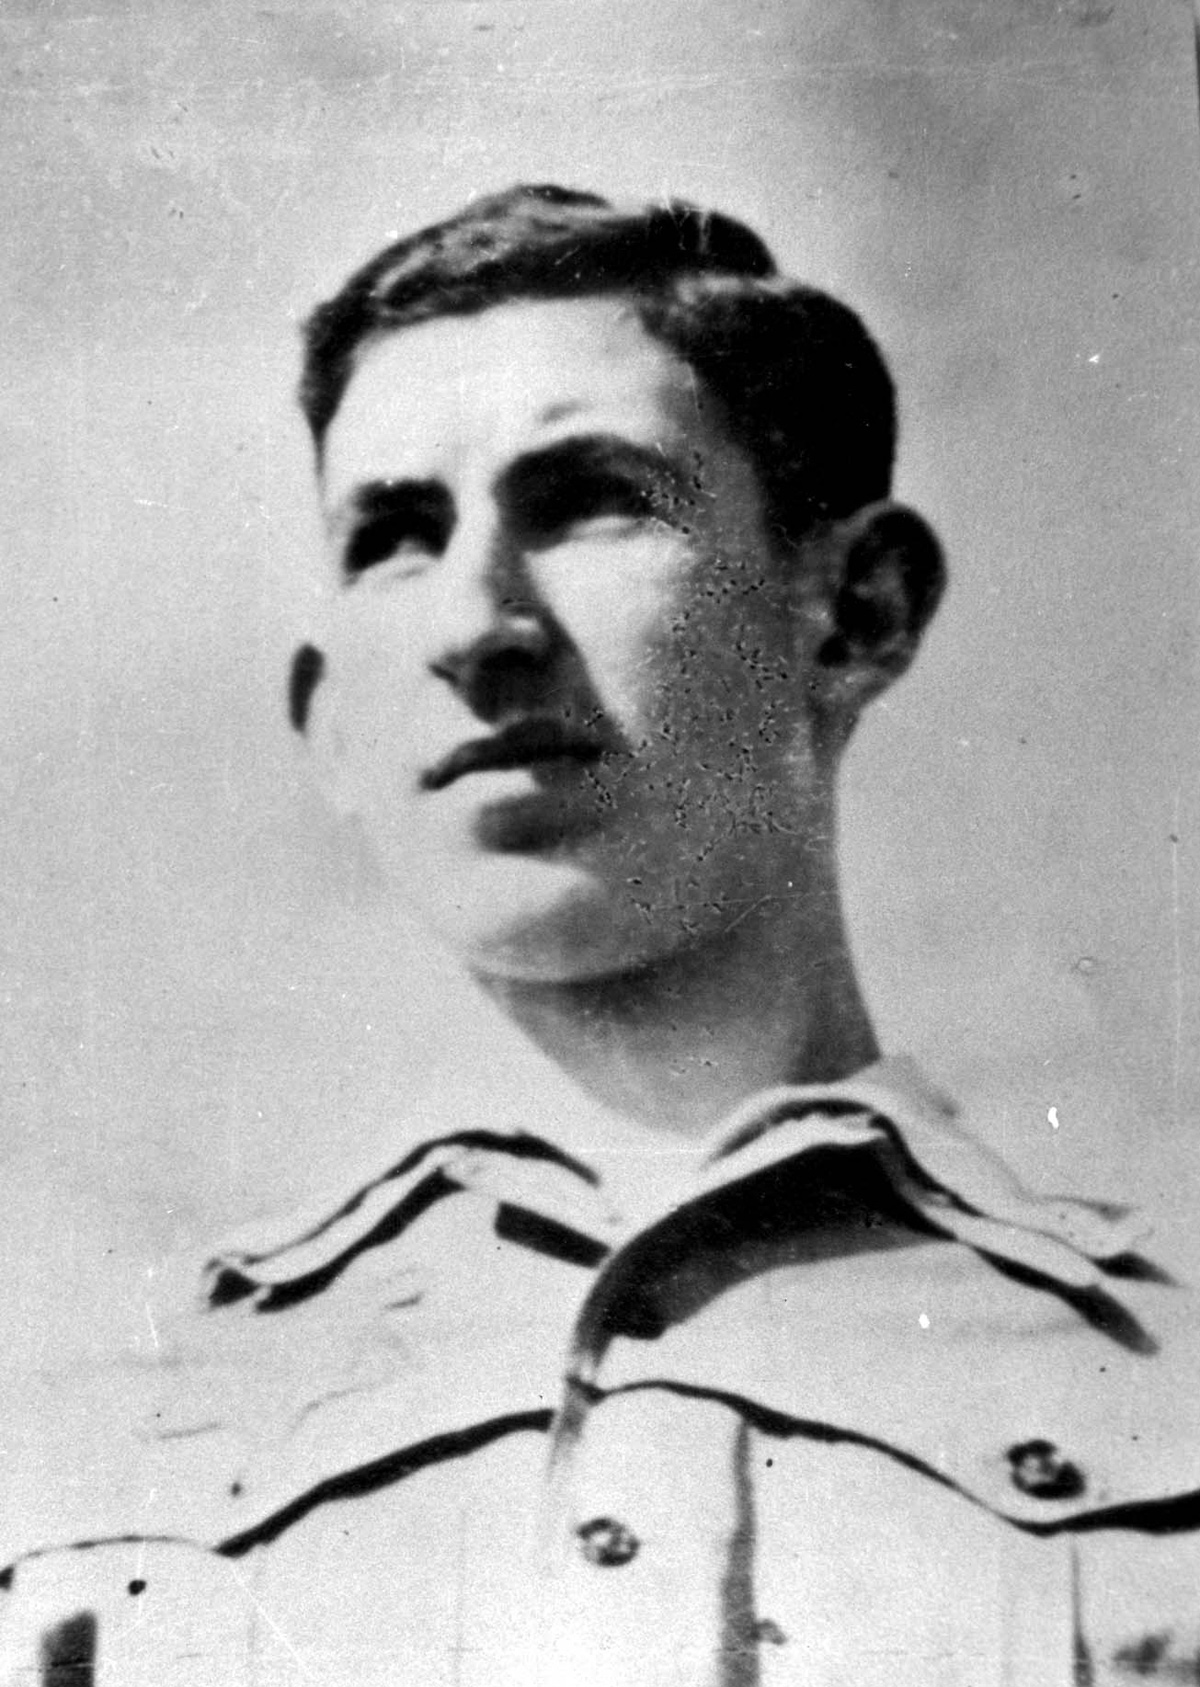 אהרון יעקבסון, פעיל ציוני, ממנהיגי הנוער בגטו לודז' ומייסד "חזית דור בני-מדבר" בגטו. לודז', 1941